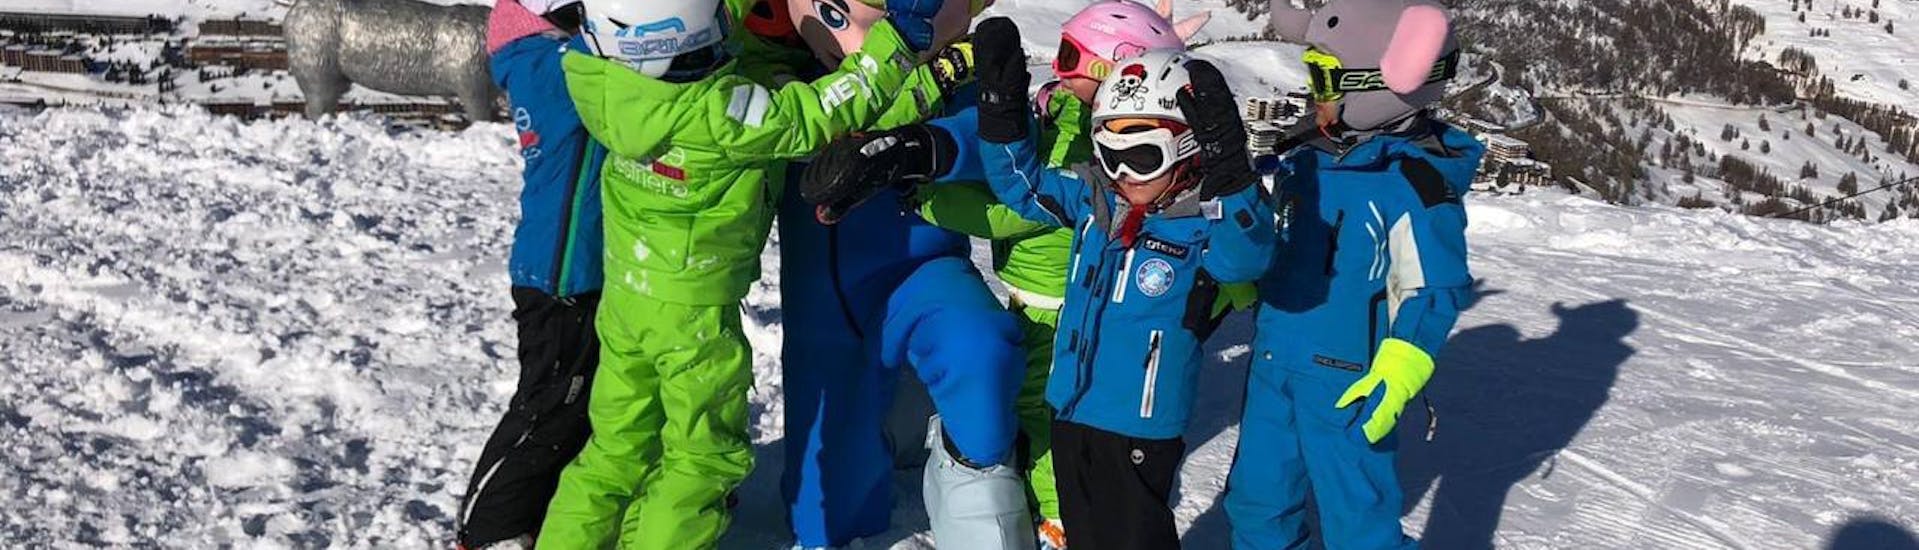 Les enfants applaudissent avec la mascotte de leur cours de snowboard pour enfants (4-8 ans) pour les débutants avec la Scuola Sci Vialattea Sauze d'Olux.